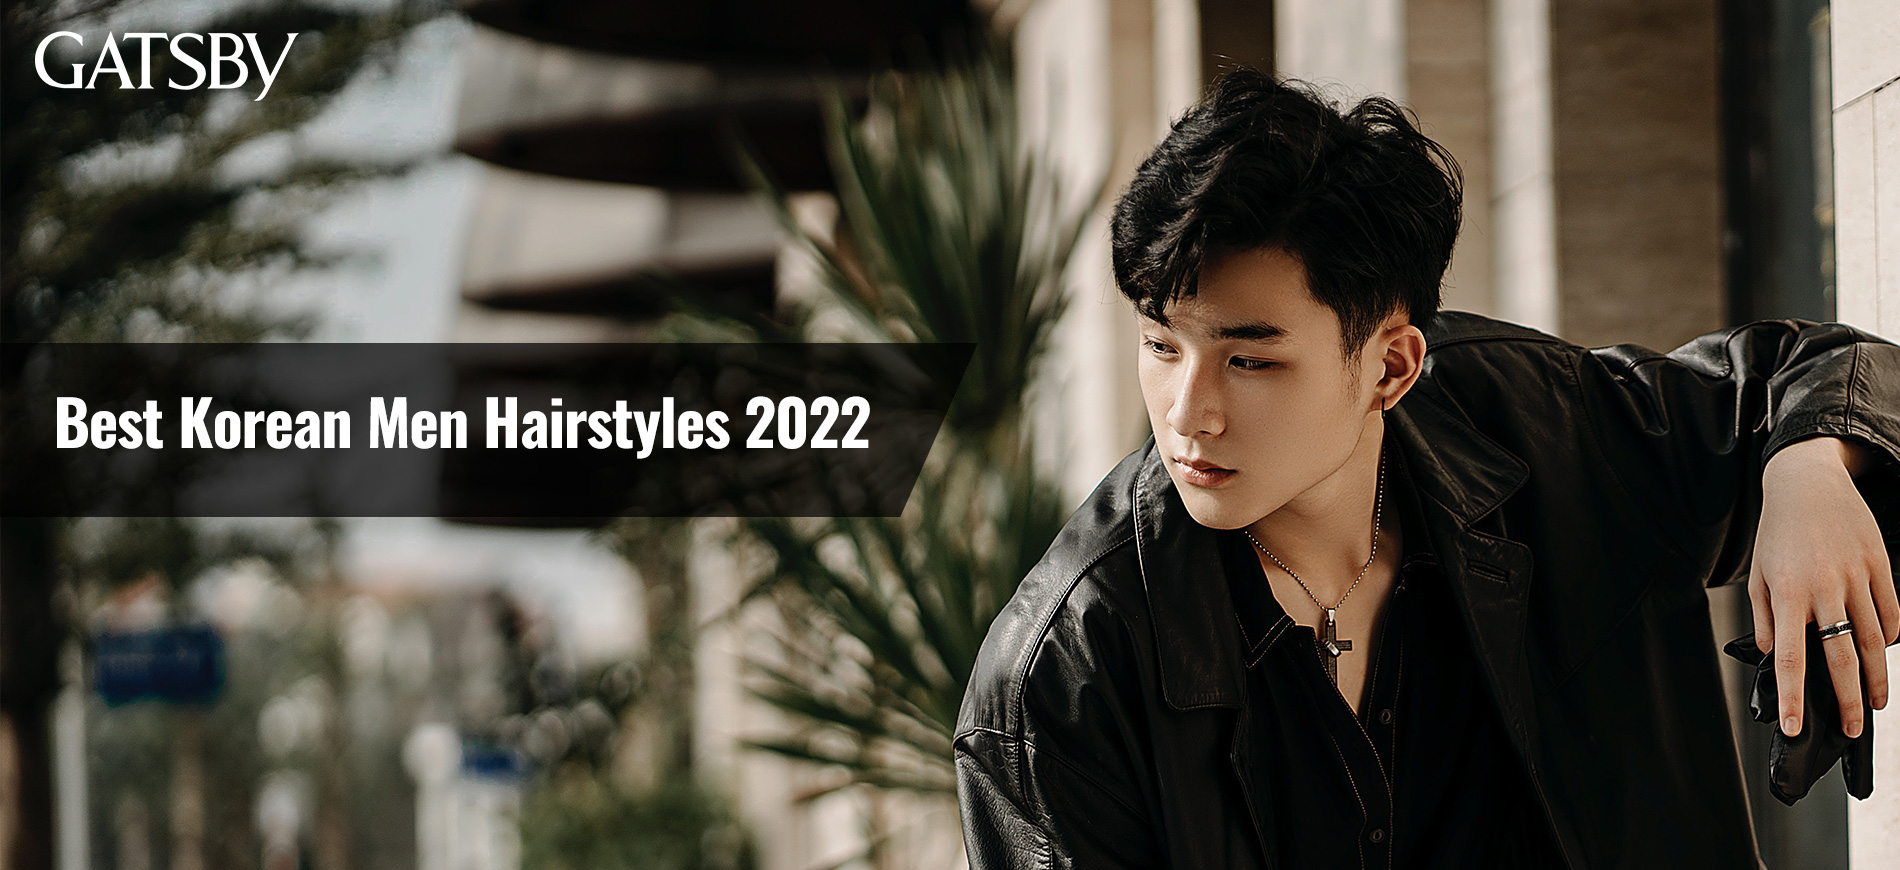 Best Korean Men Hairstyles 2022